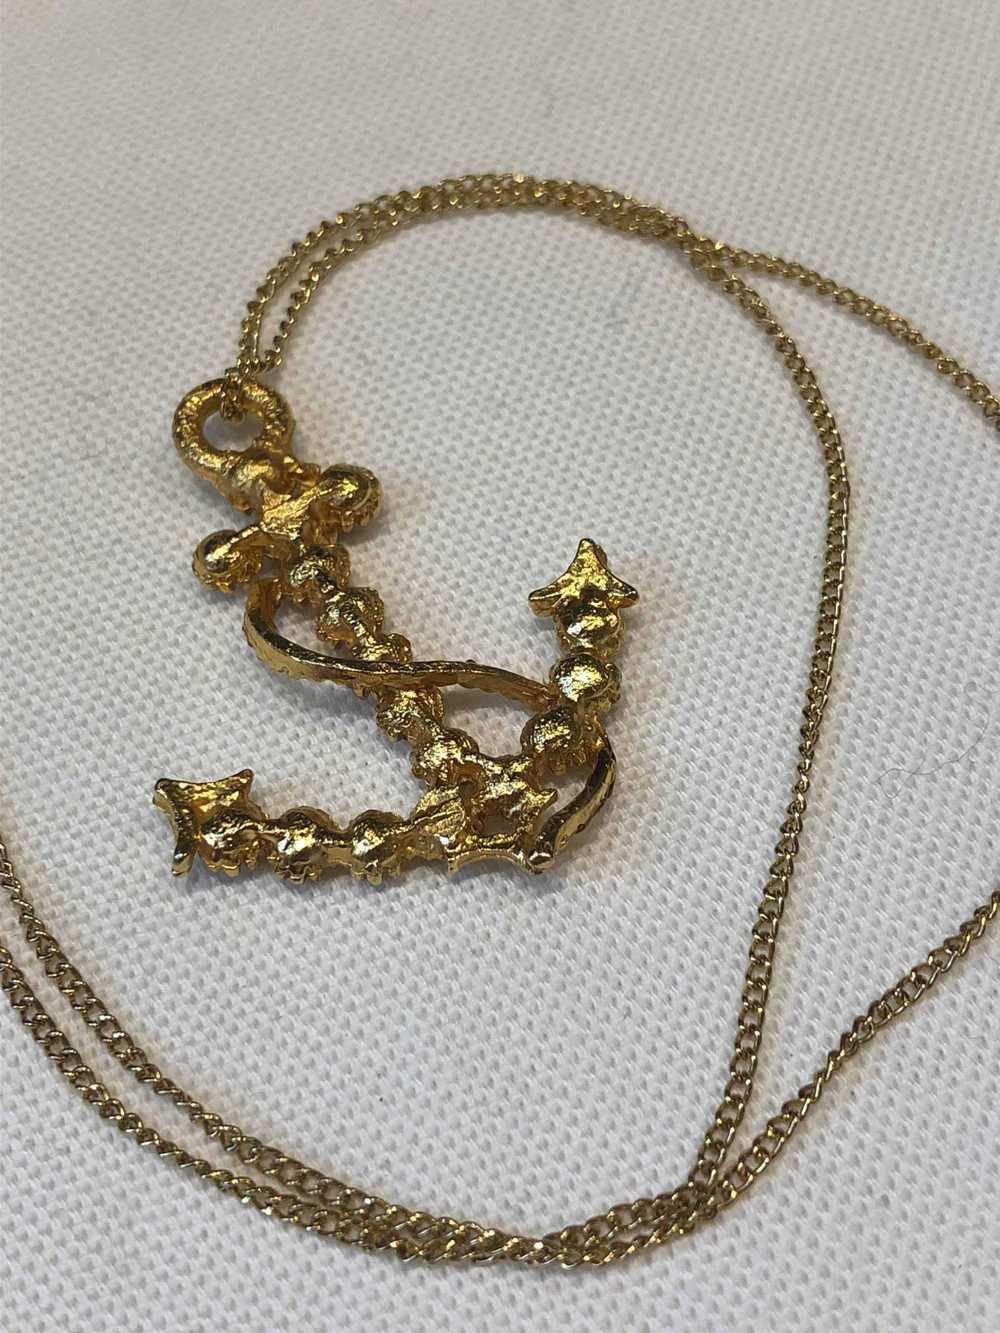 Golden metal necklace - Golden metal necklace wit… - image 2